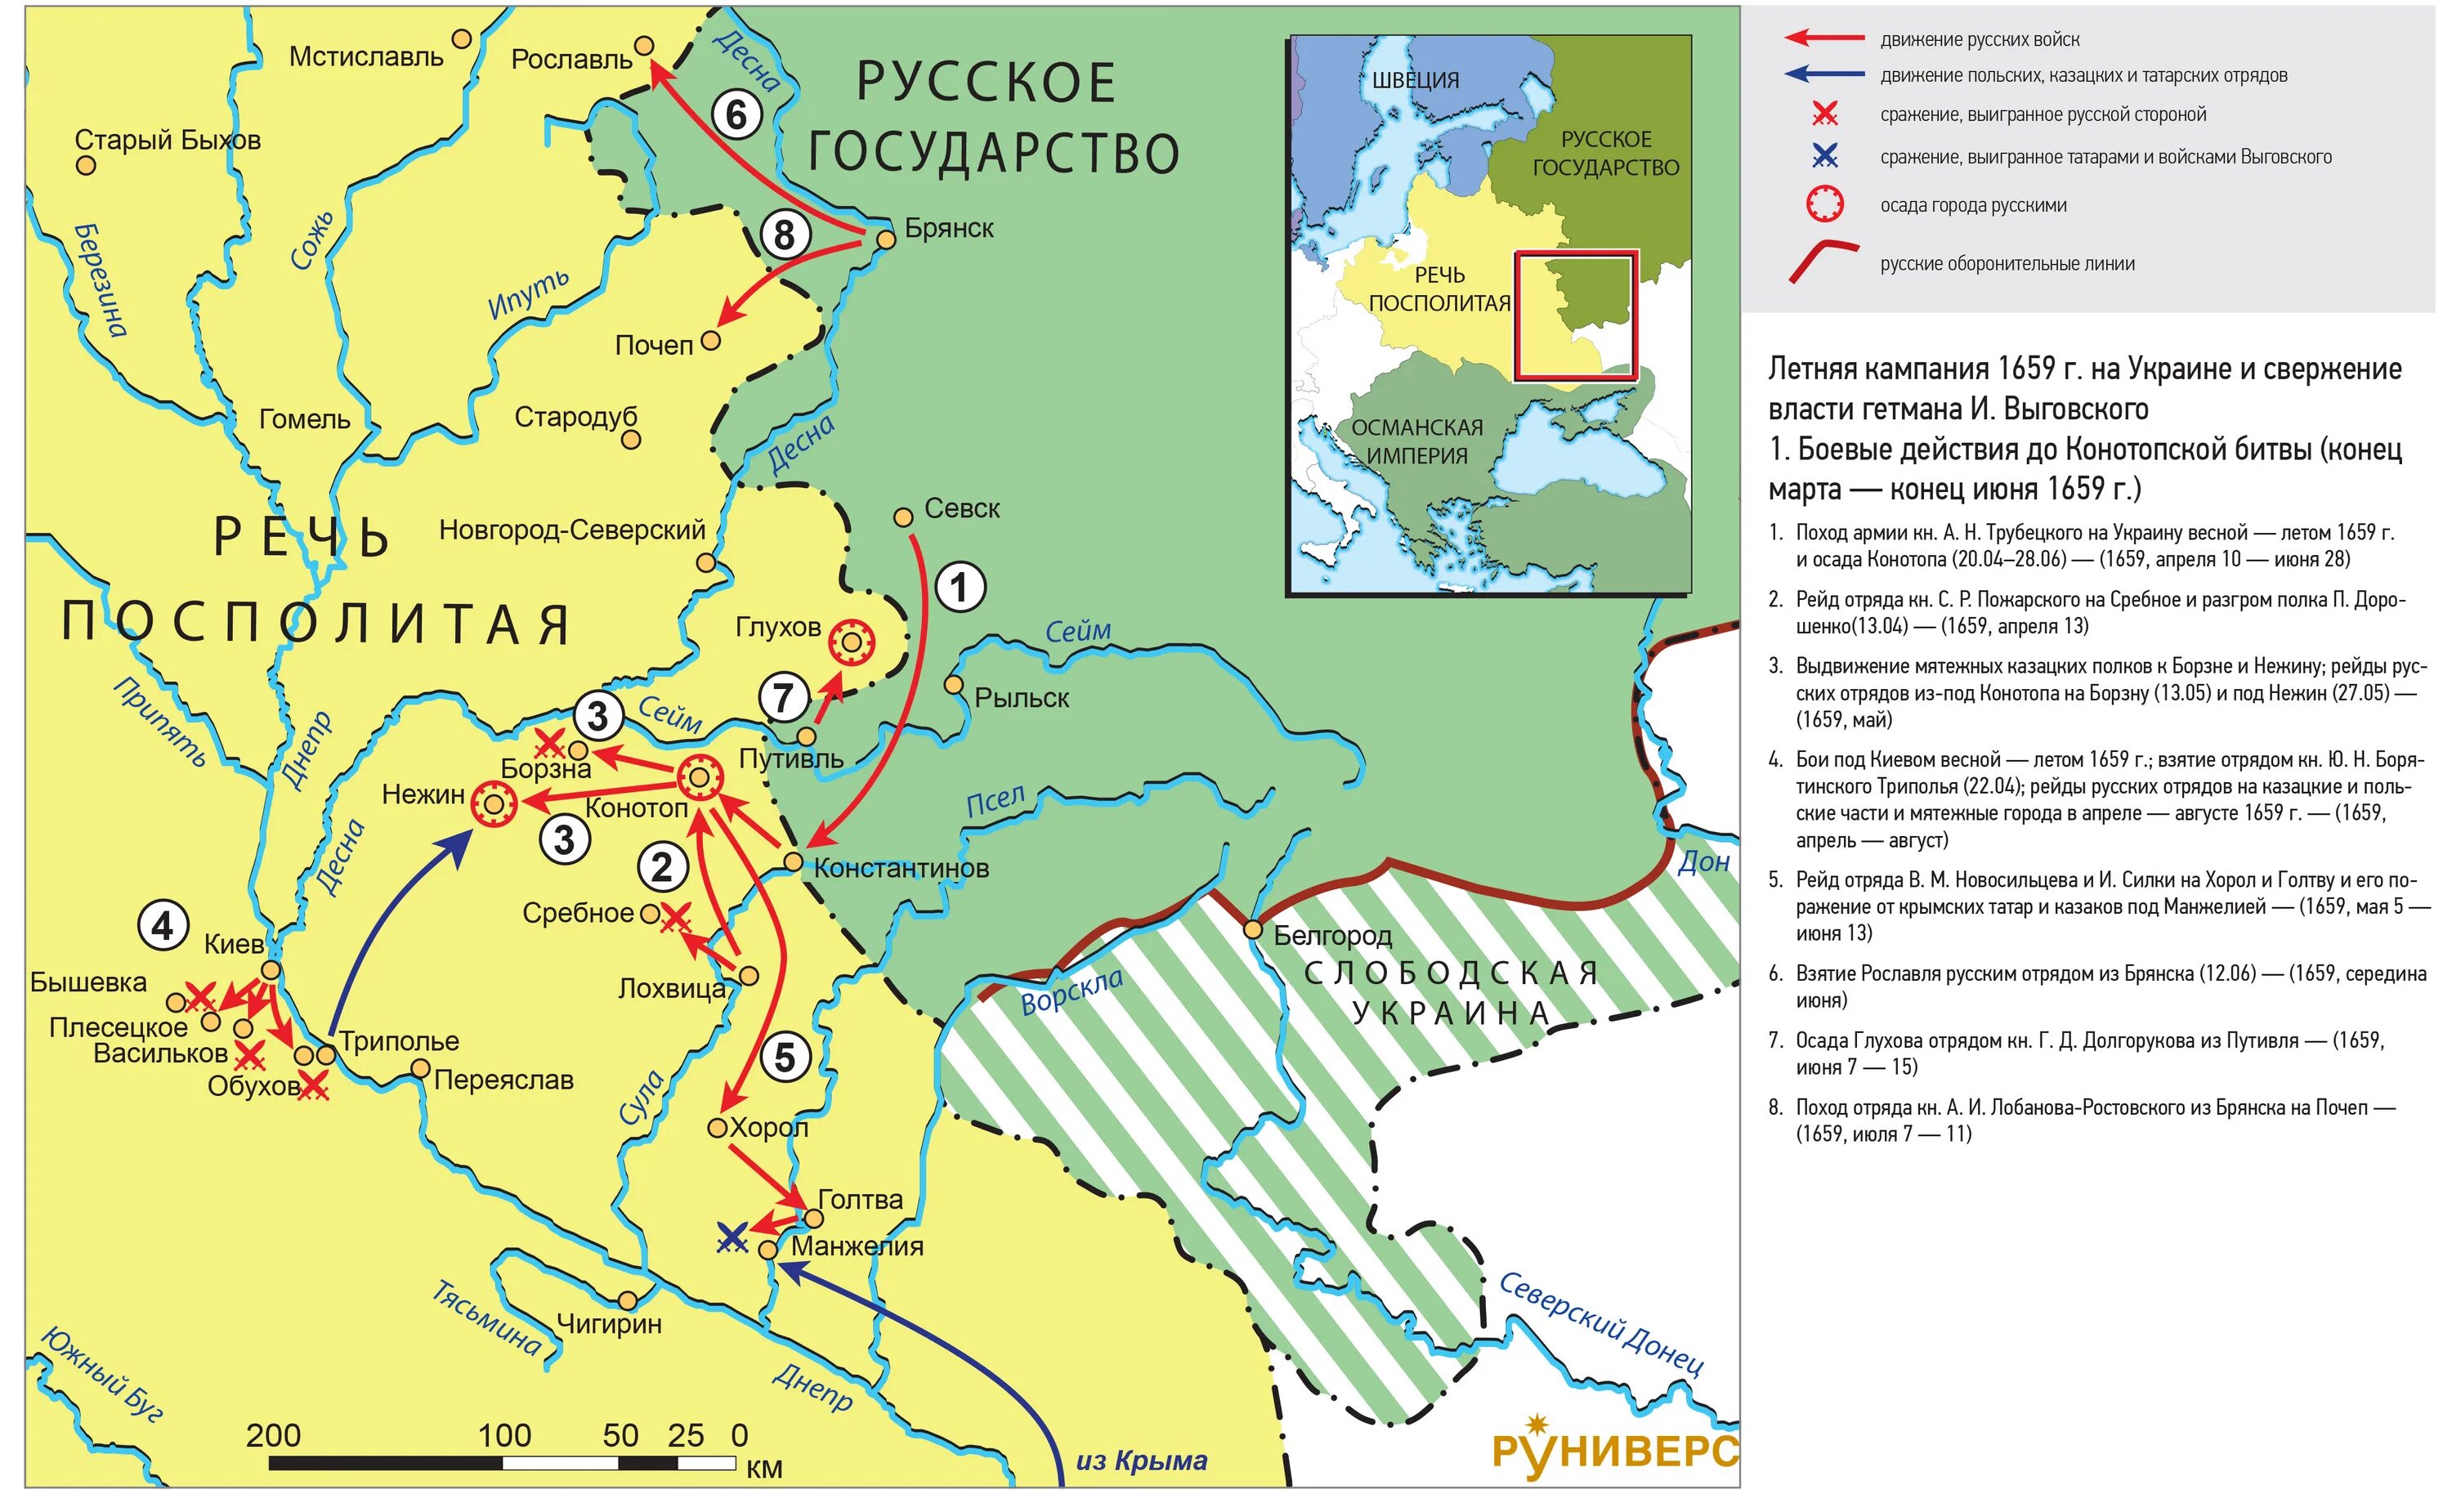 Цели россии в русско польской войне. Карта по русско польской войне 1654 1667.